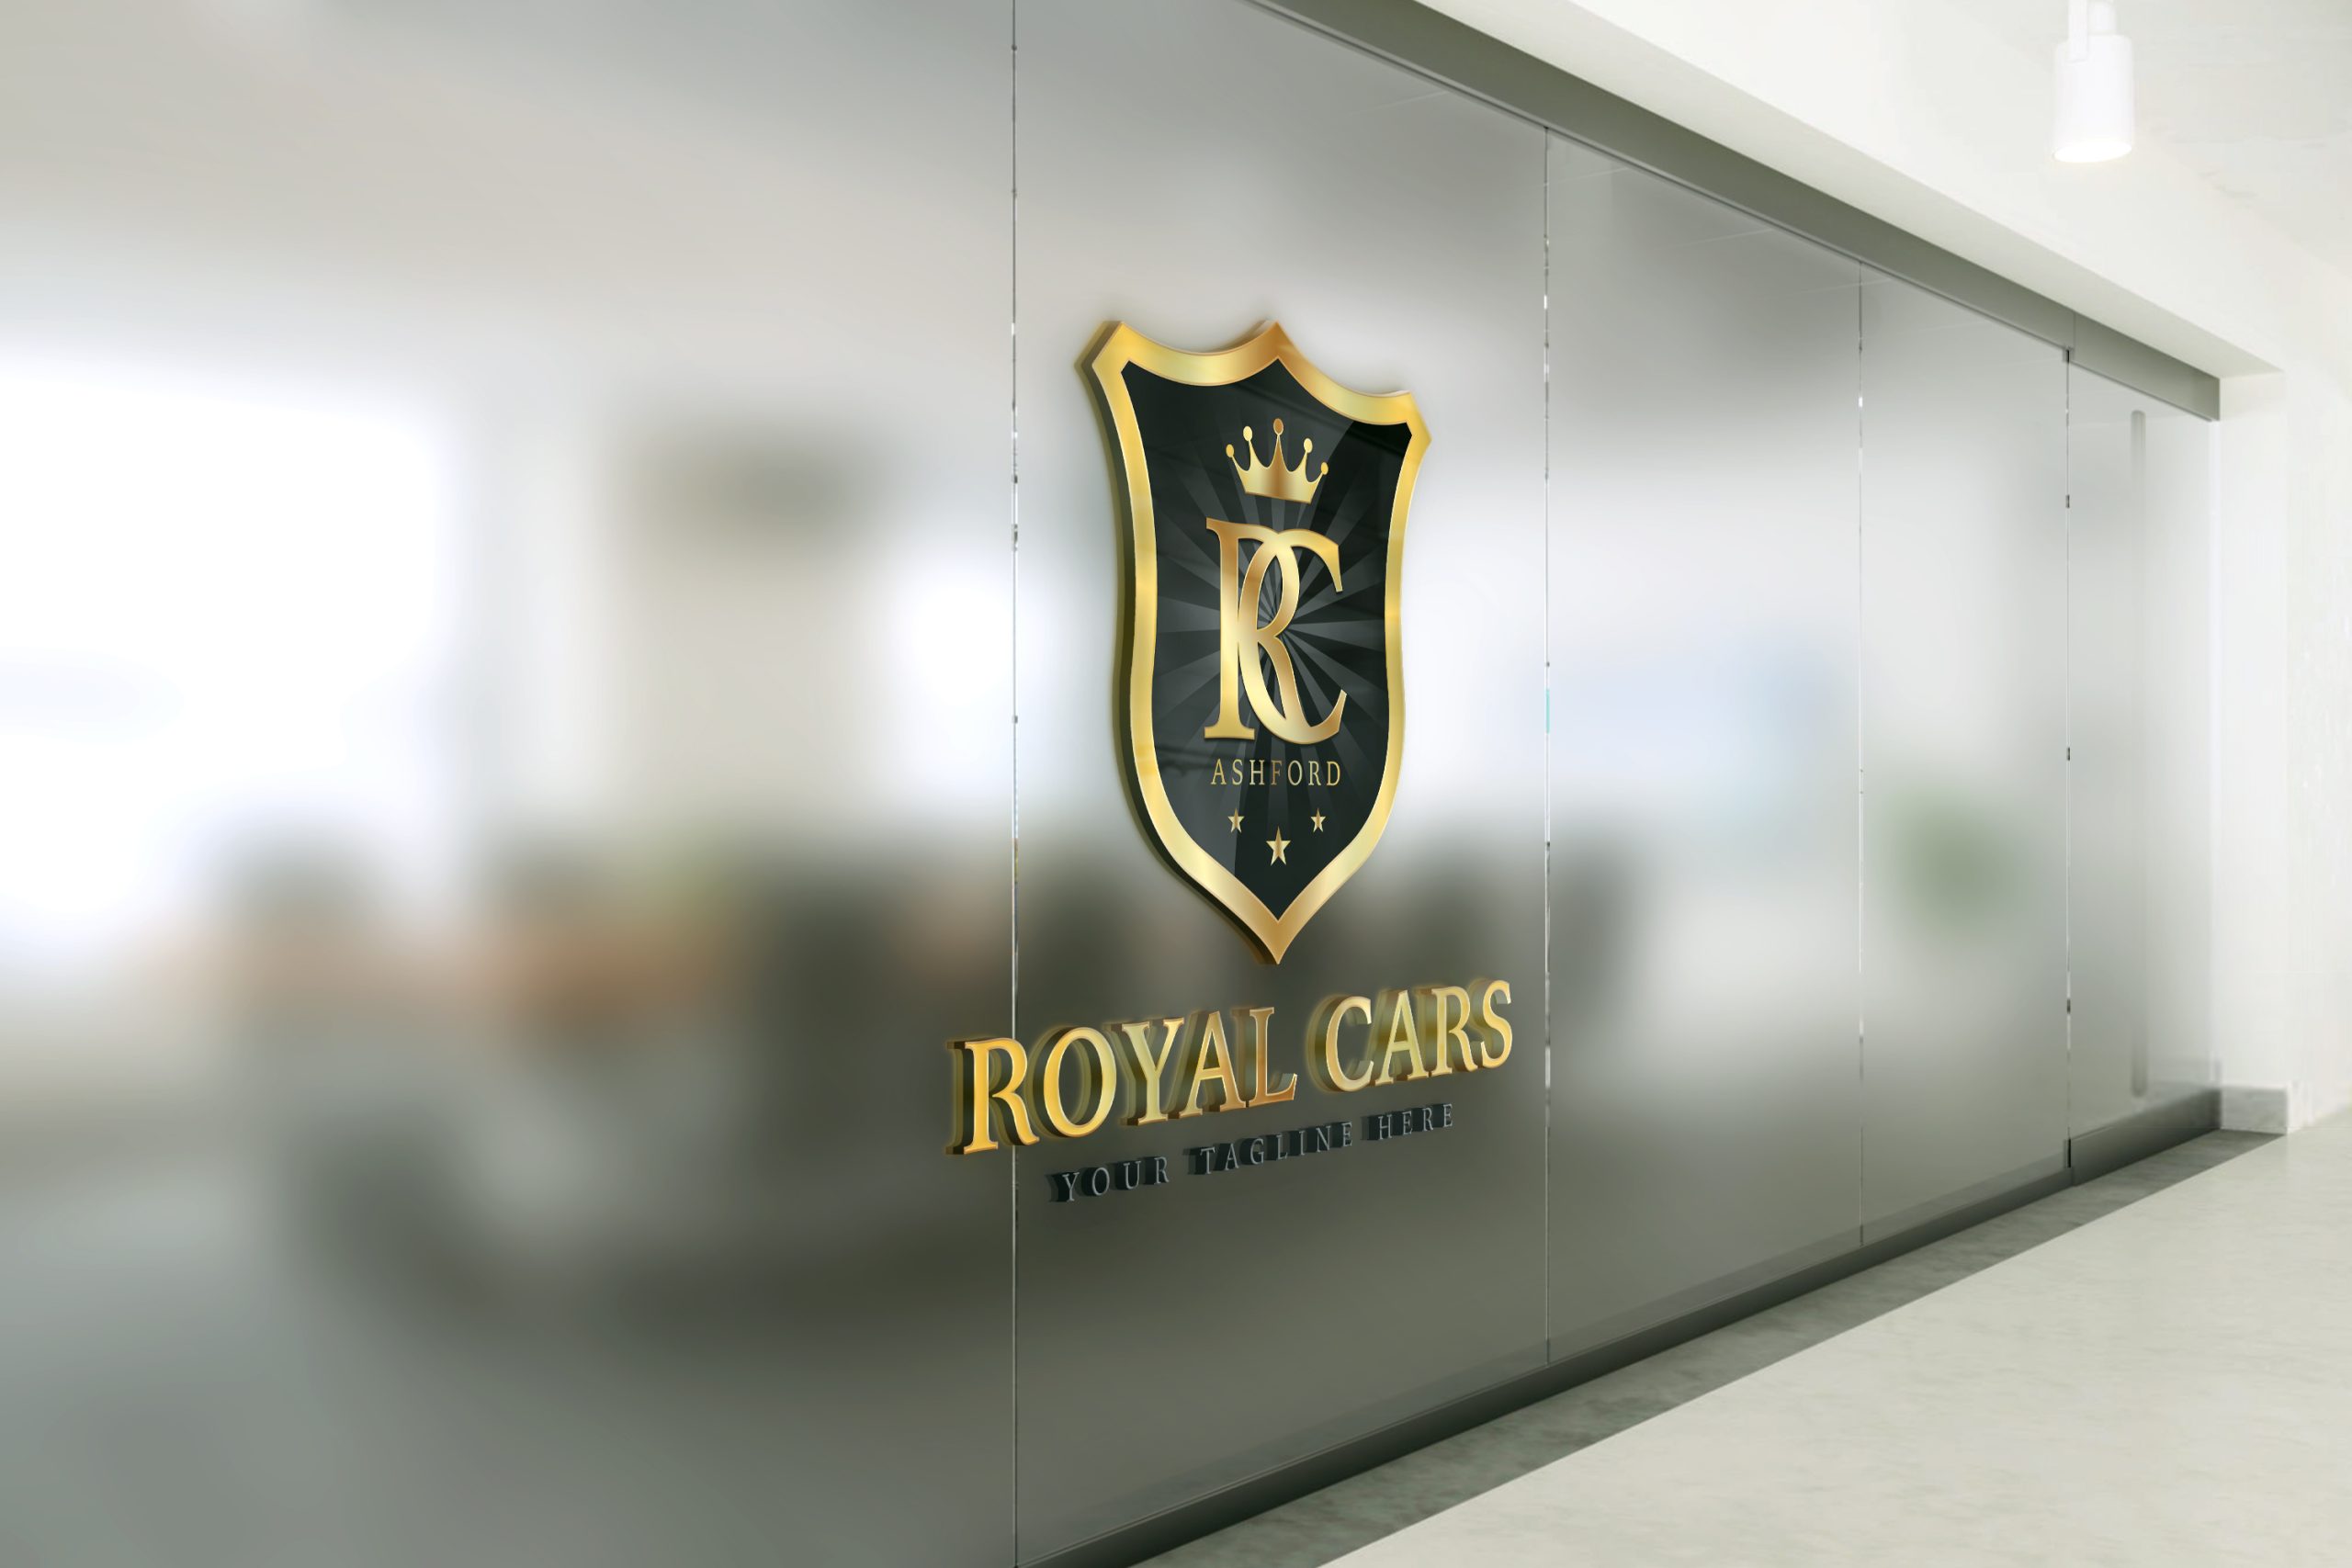 Royal Cars Logo Design Free Download